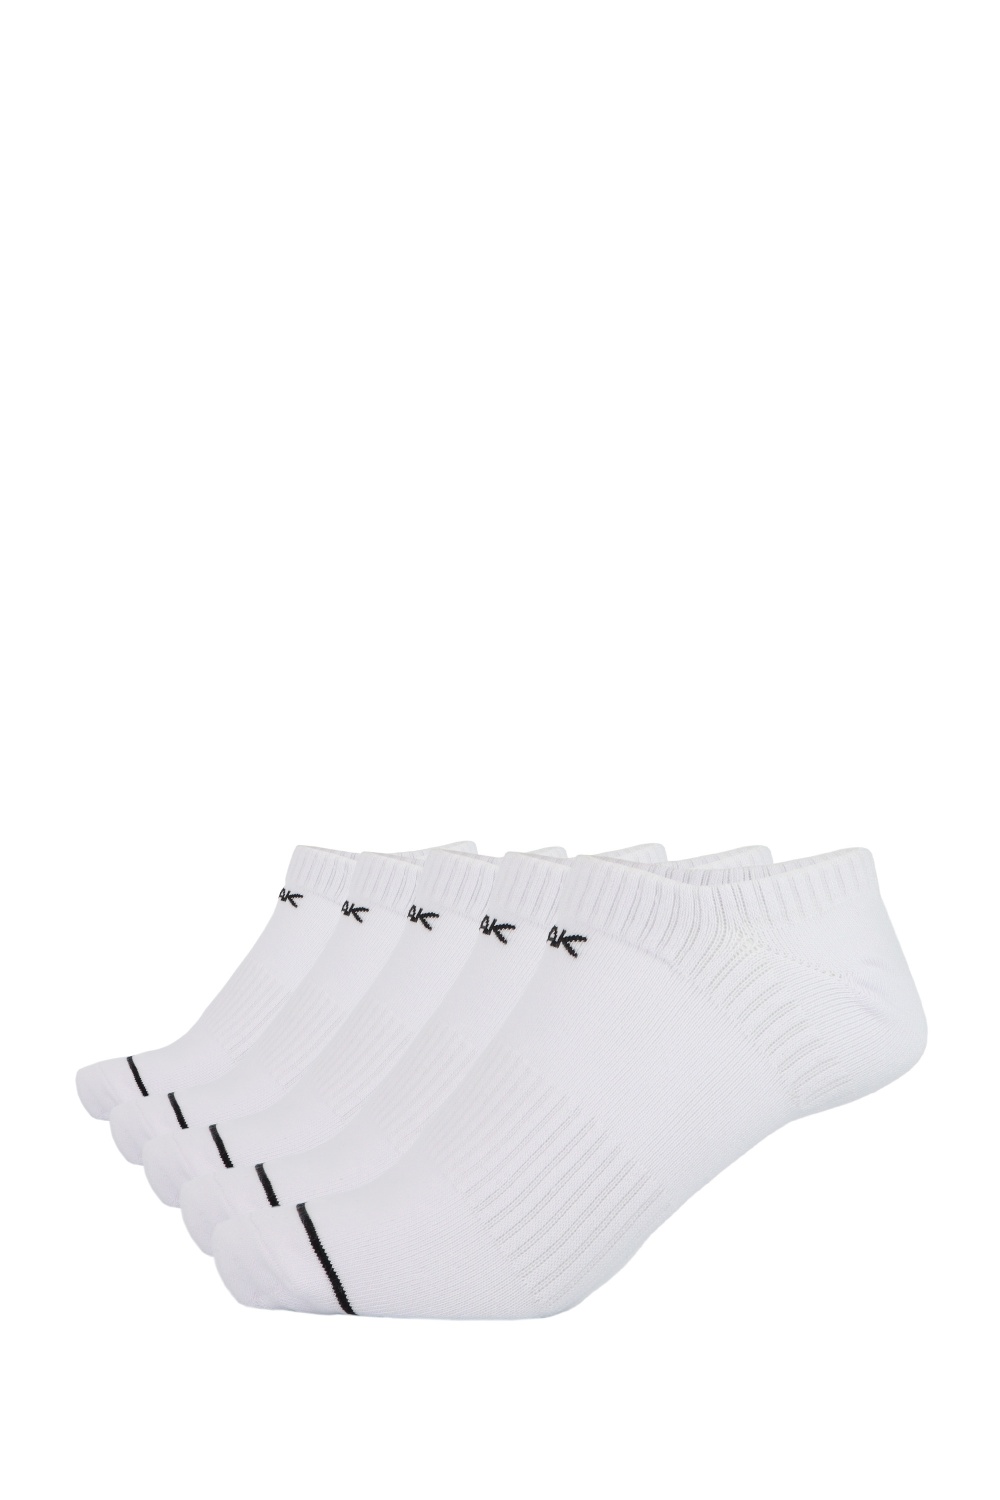 PEAK Anklet Socks Stripe - 5er Pack